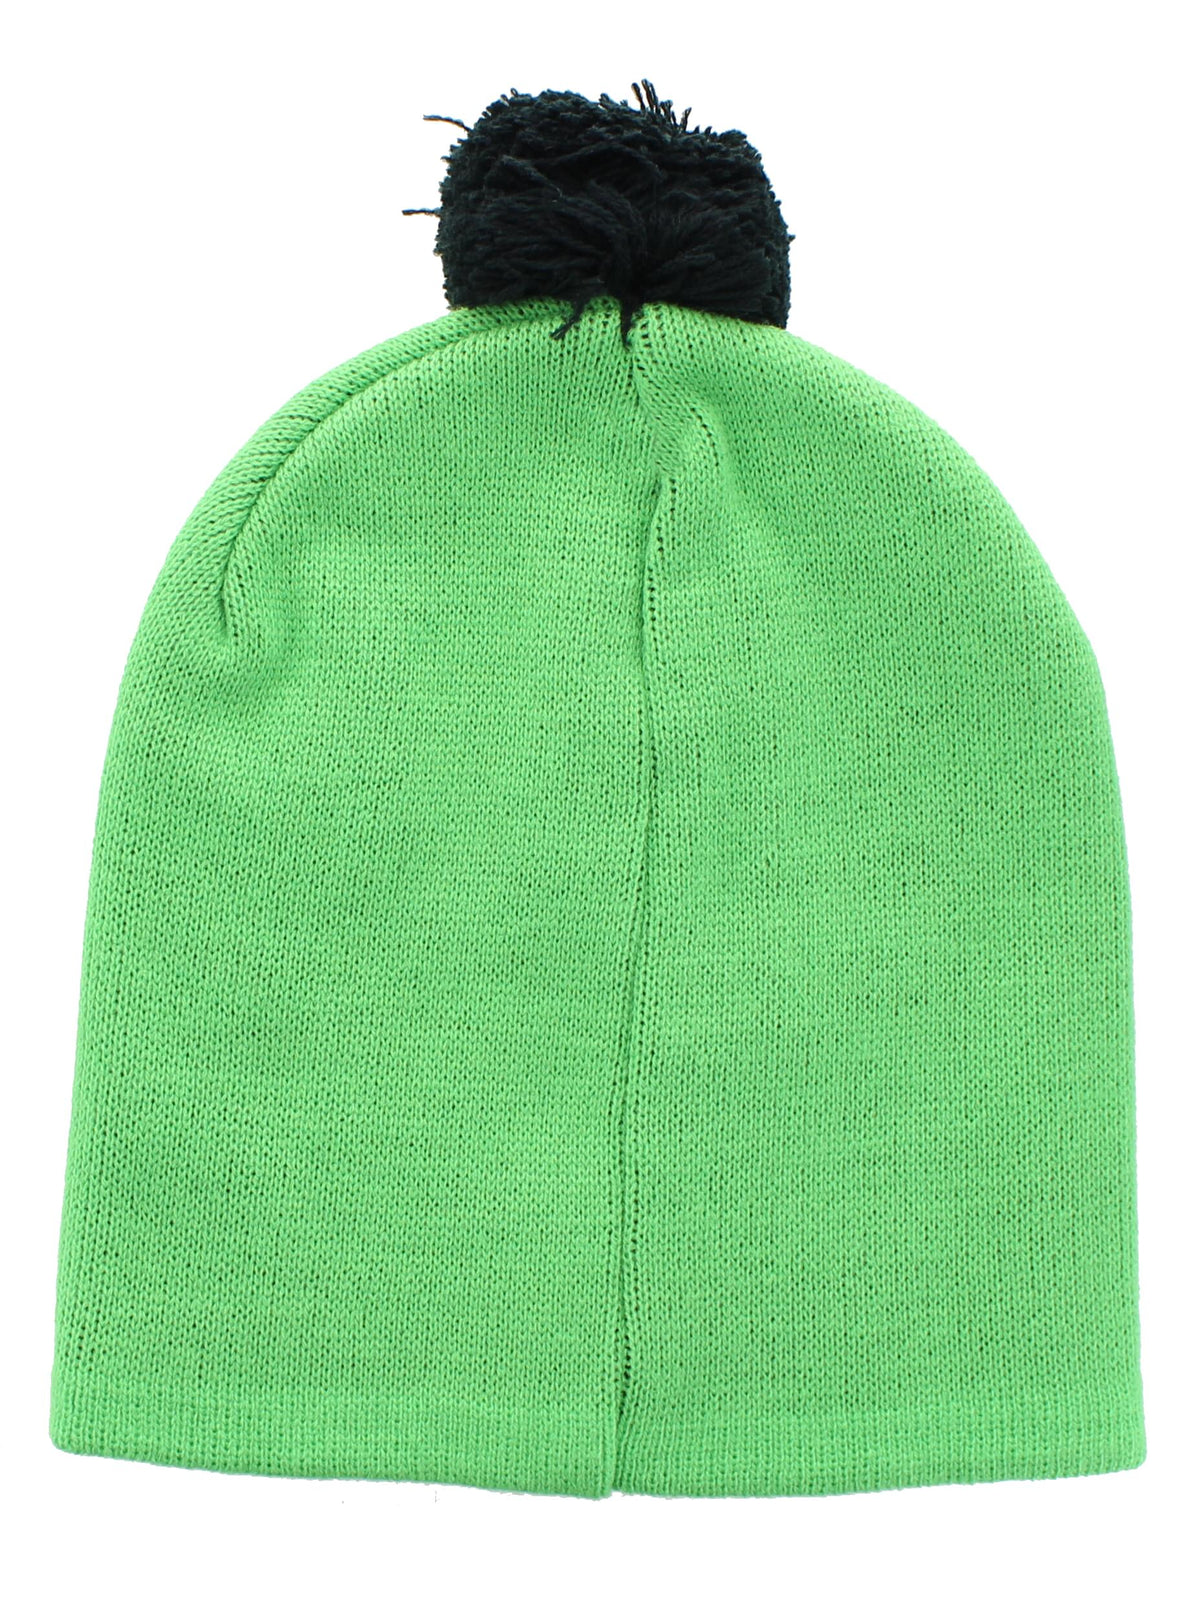 Minecraft Creeper Pom Knit Beanie | Green | One Size